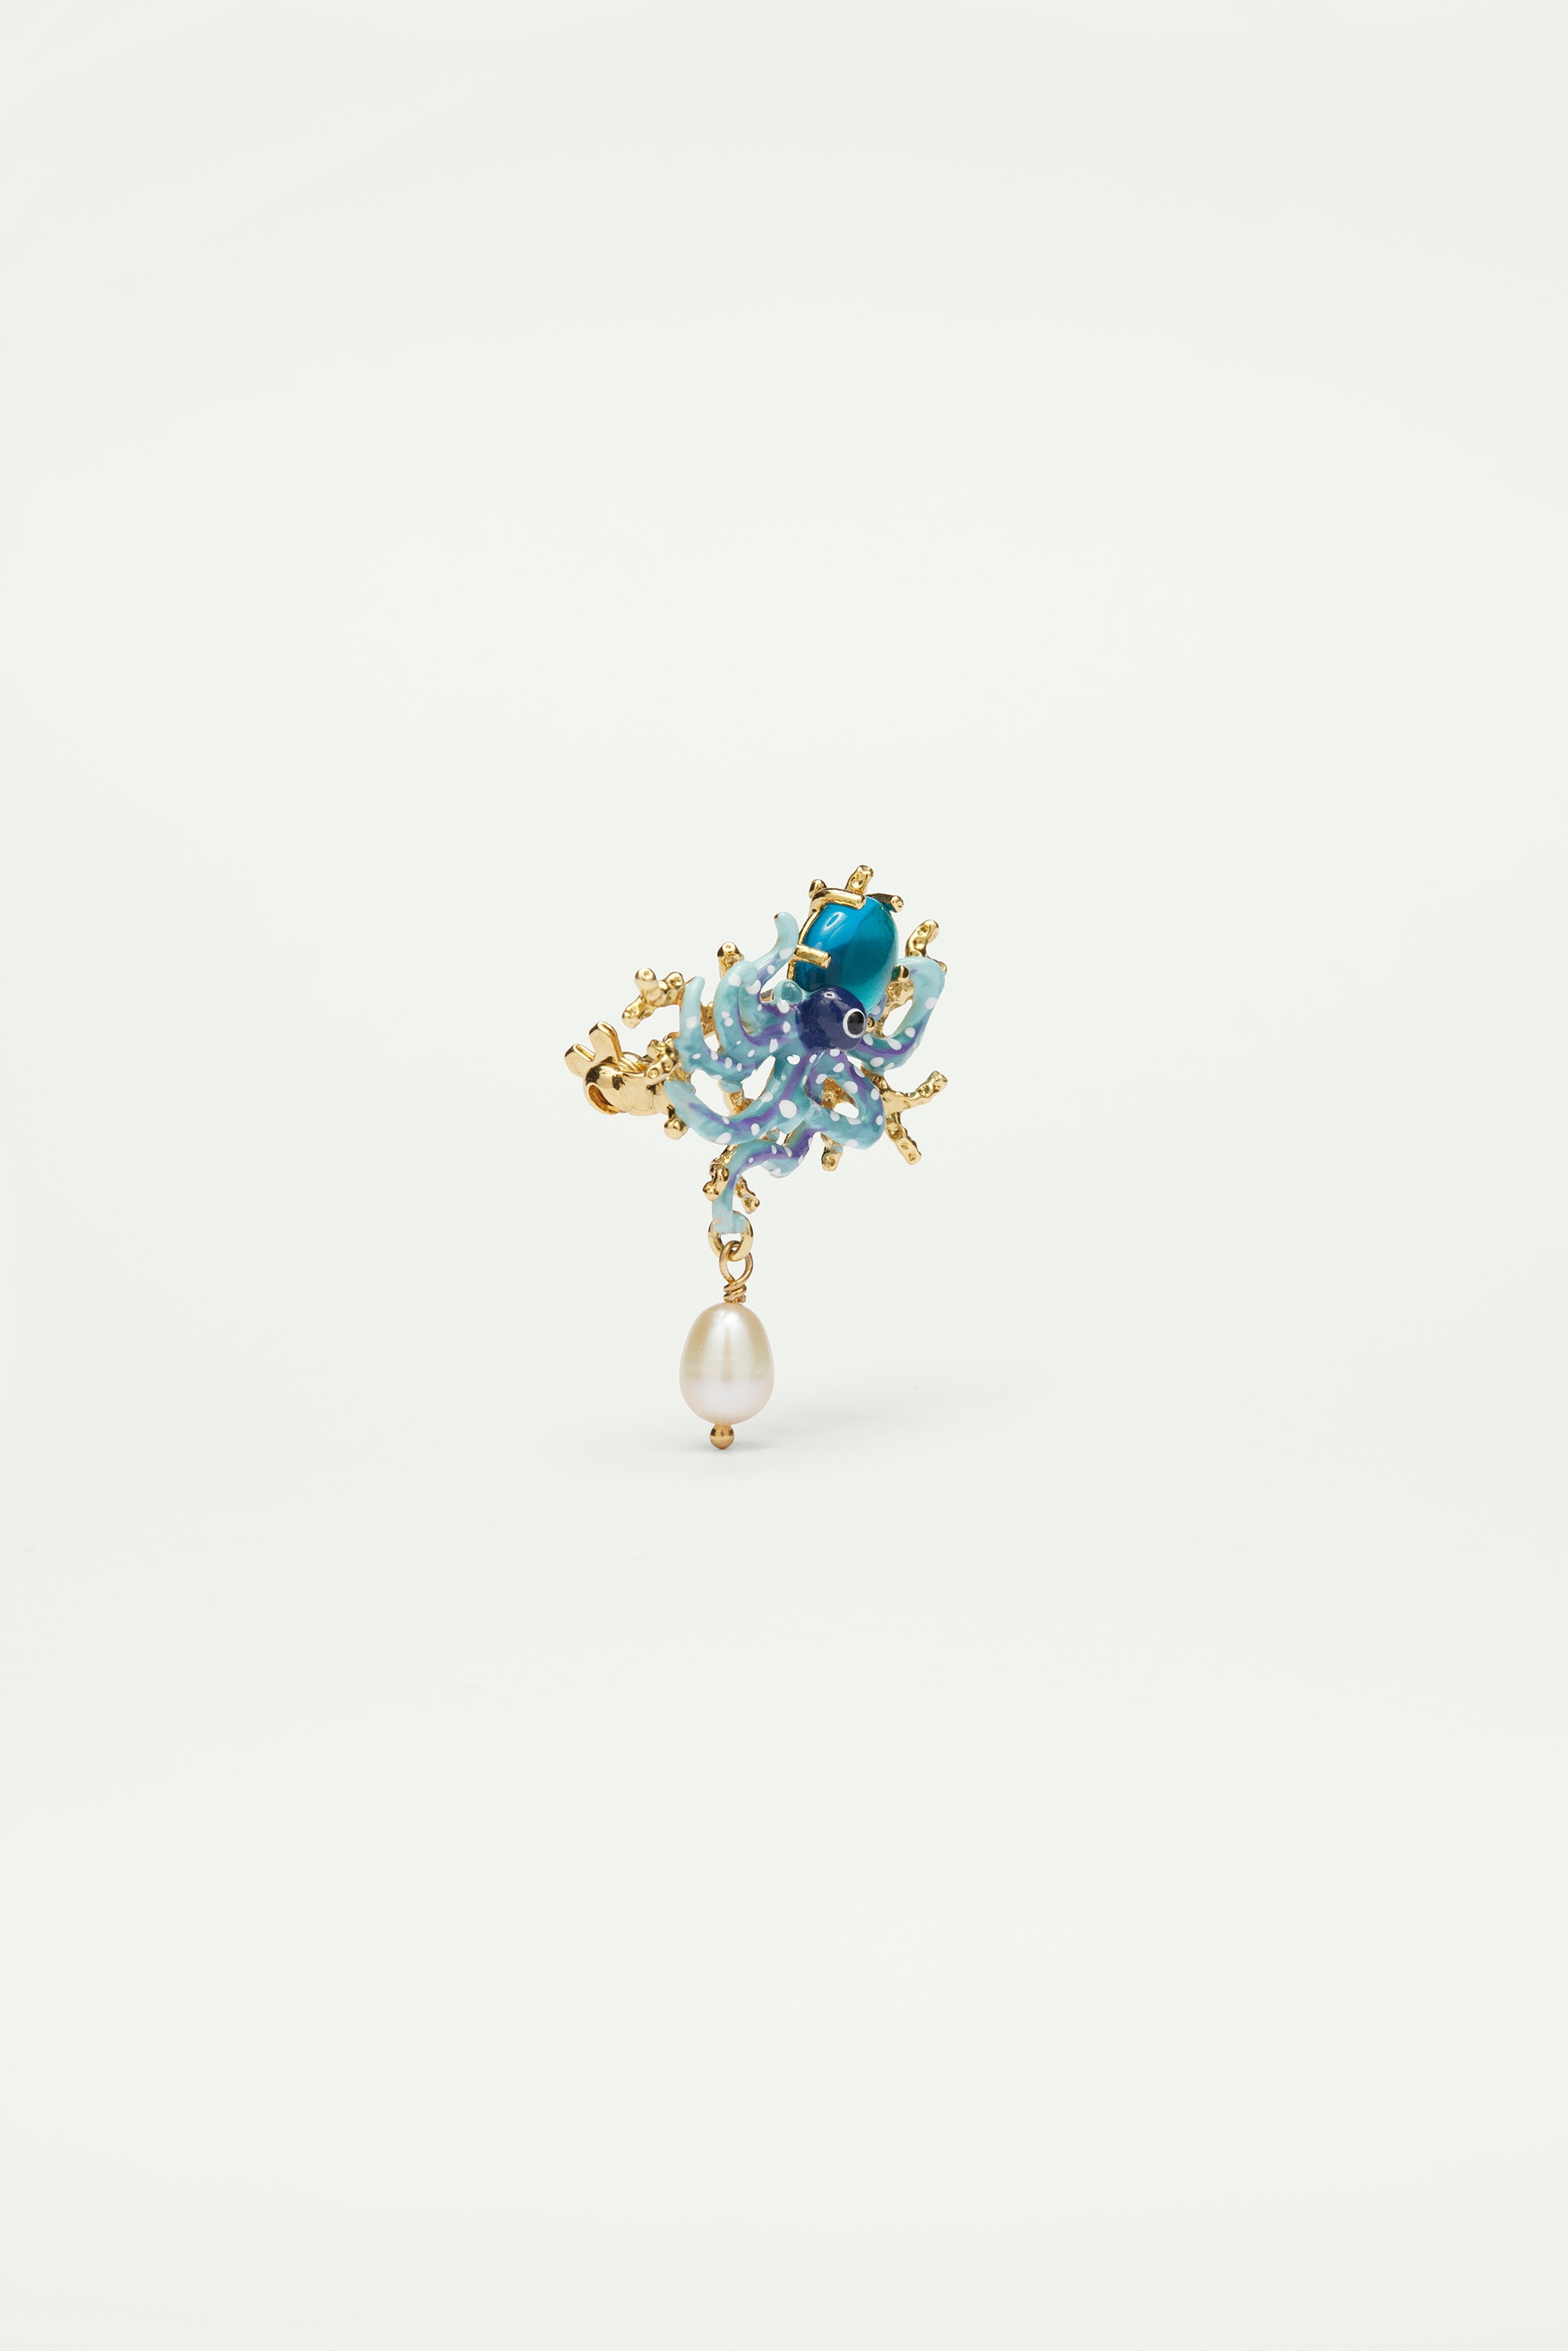 Broche pulpo azul, piedra de cristal tallado azul y perla de nácar